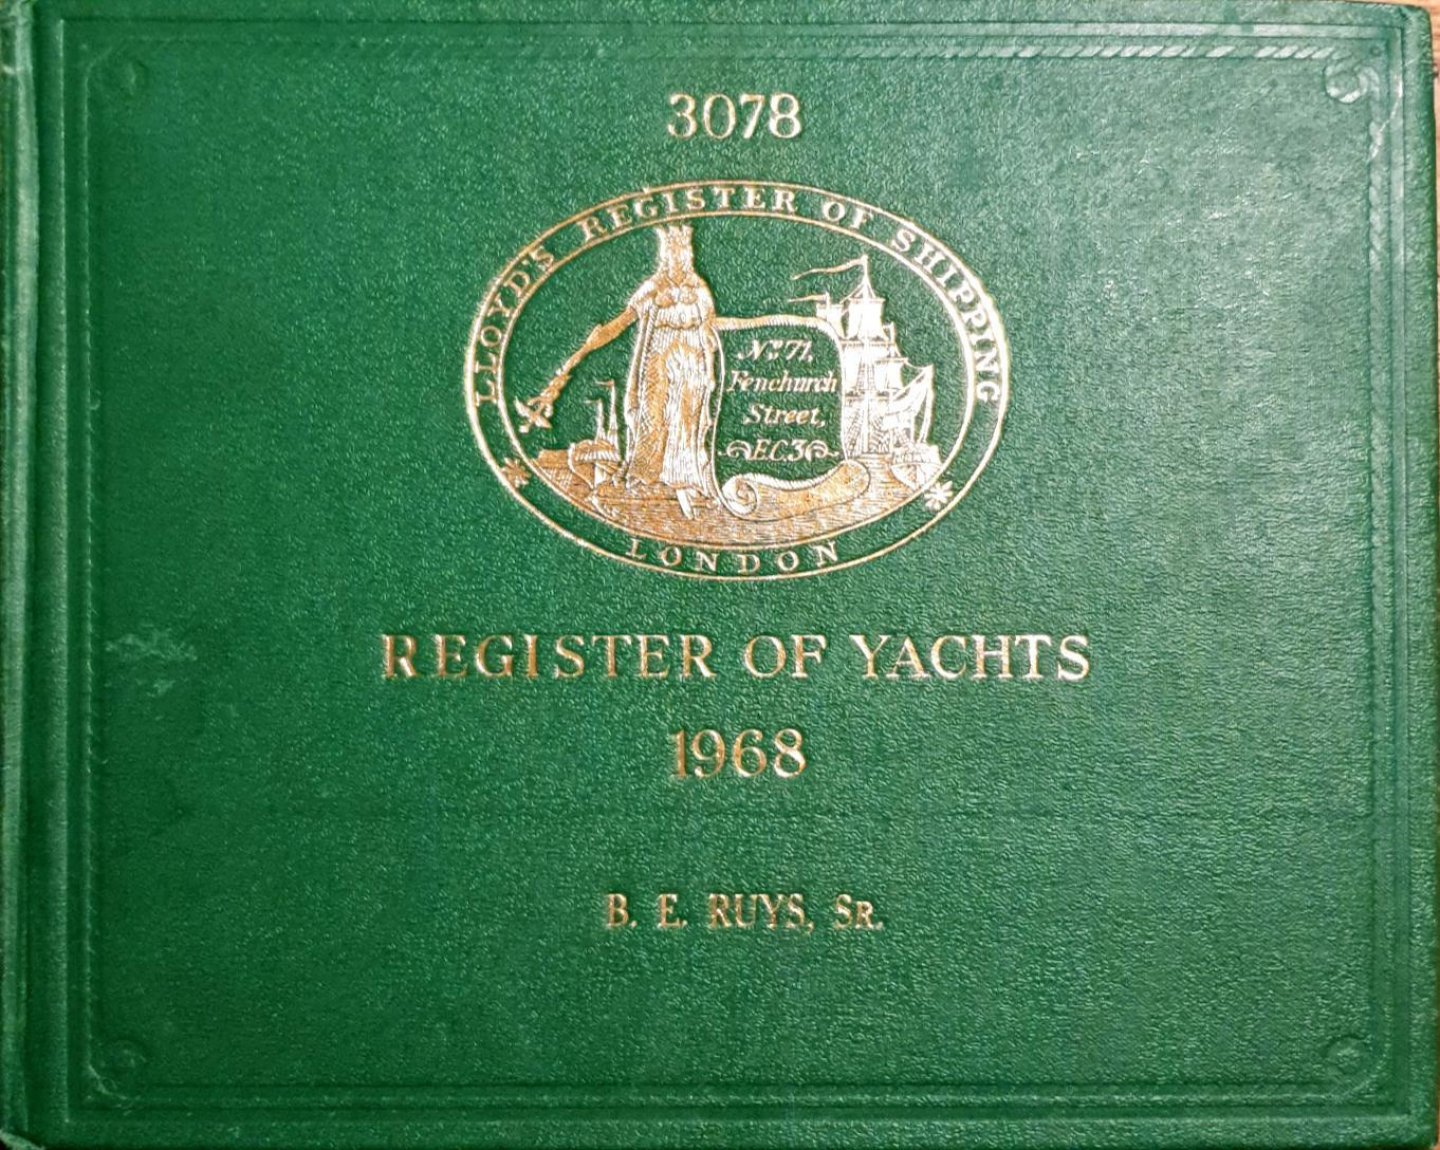 LLOYD'S - REGISTER OF YACHTS 1968, BOEKEIGENAAR B.E. RUYS, Sr.